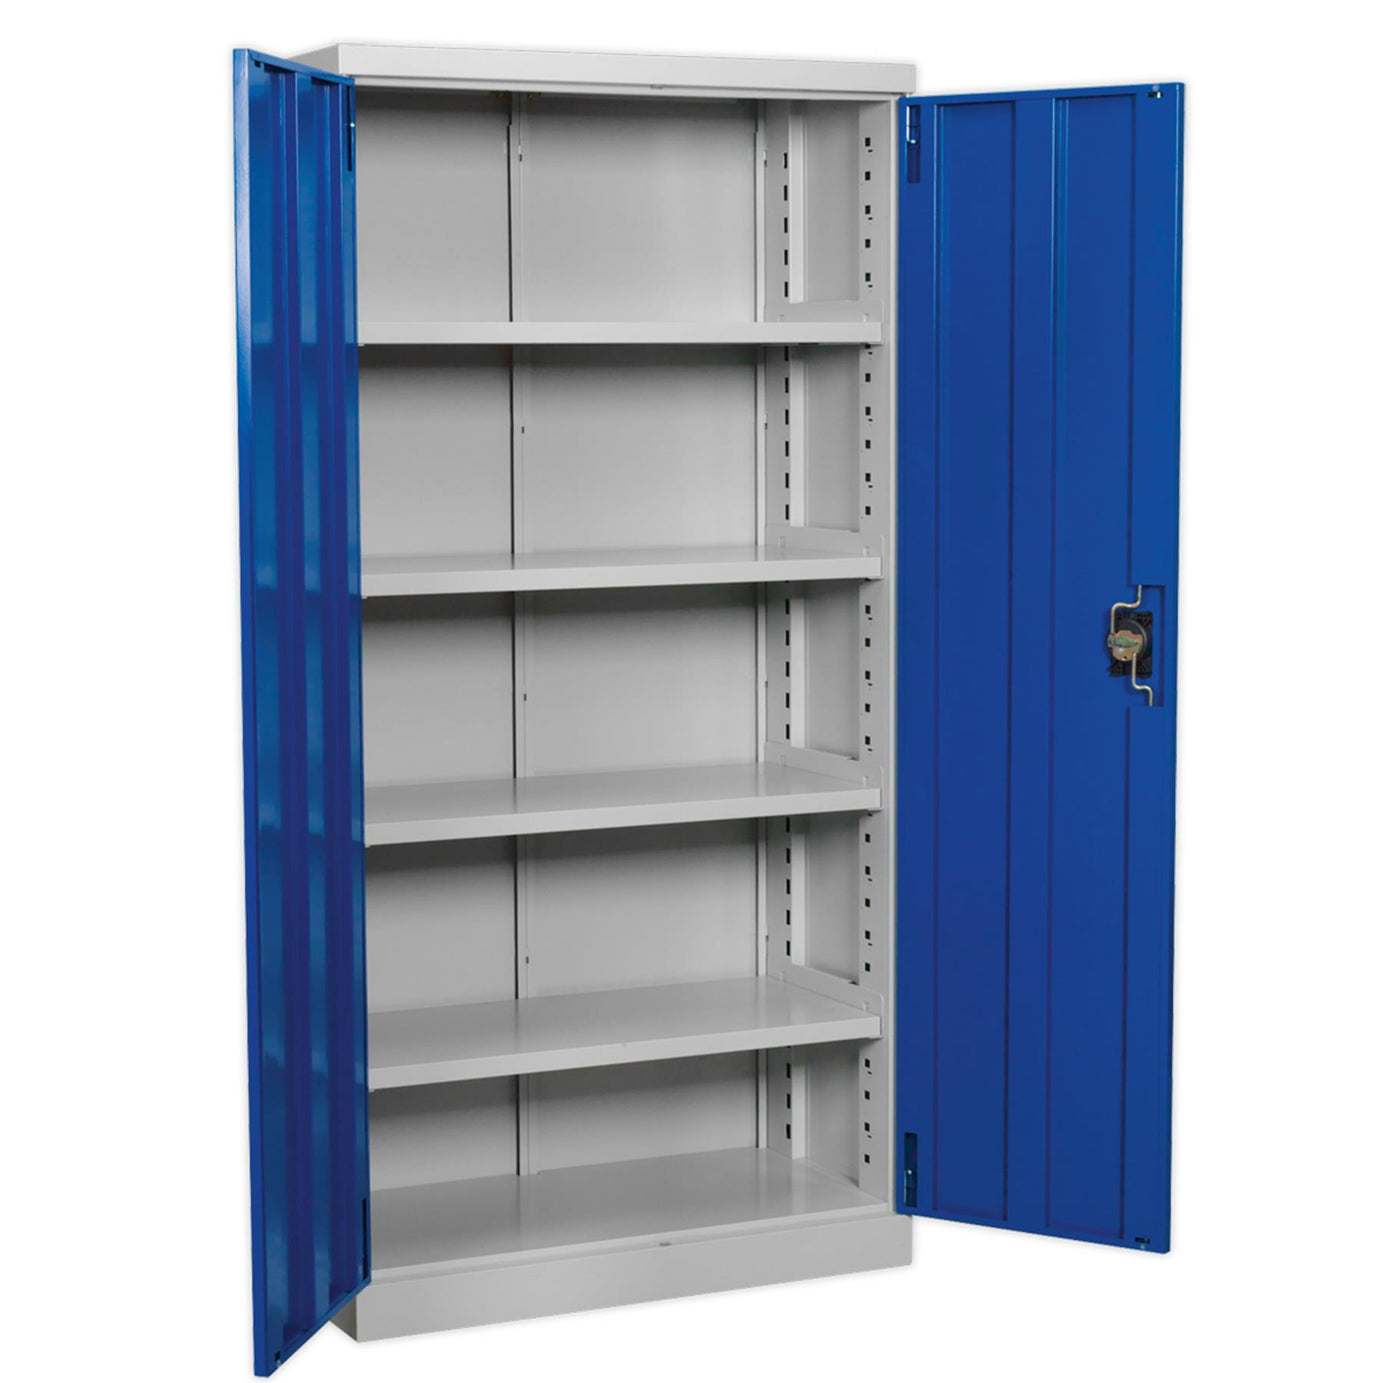 Sealey Industrial Cabinet 4 Shelf 1800mm  double door, freestanding